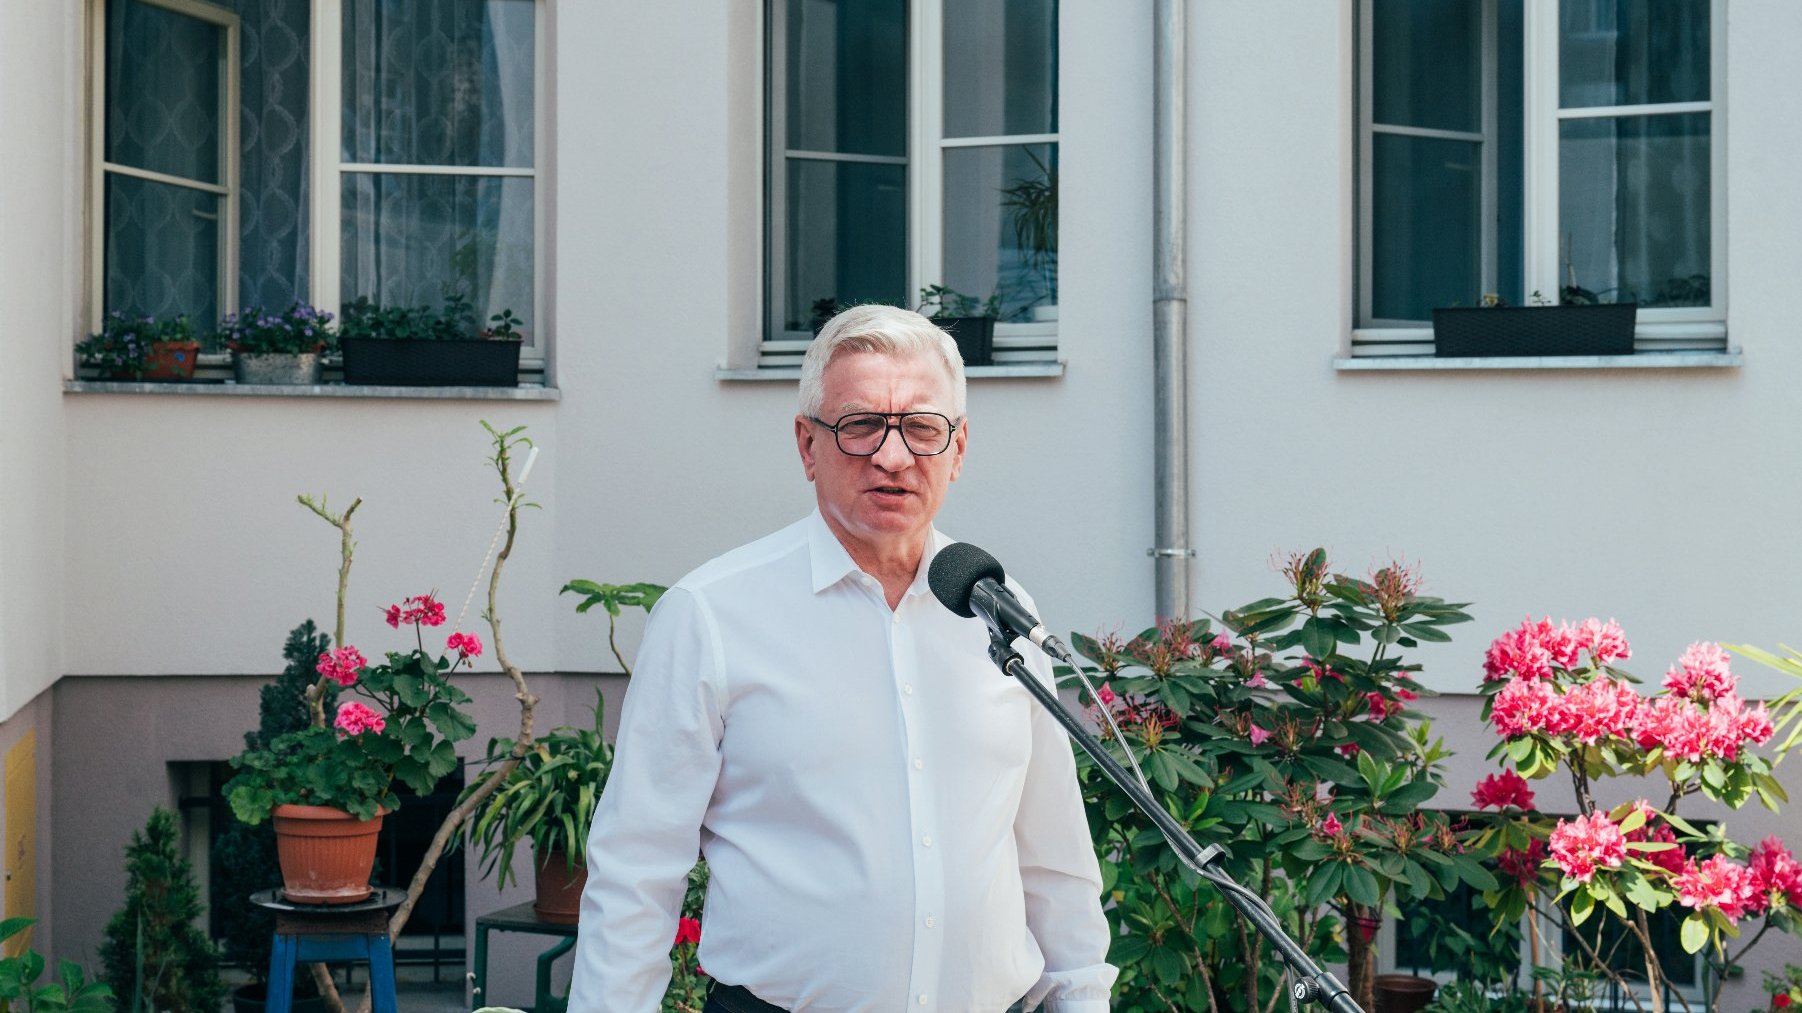 Na zdjęciu prezydent Poznania przed mikrofonem na podwórku